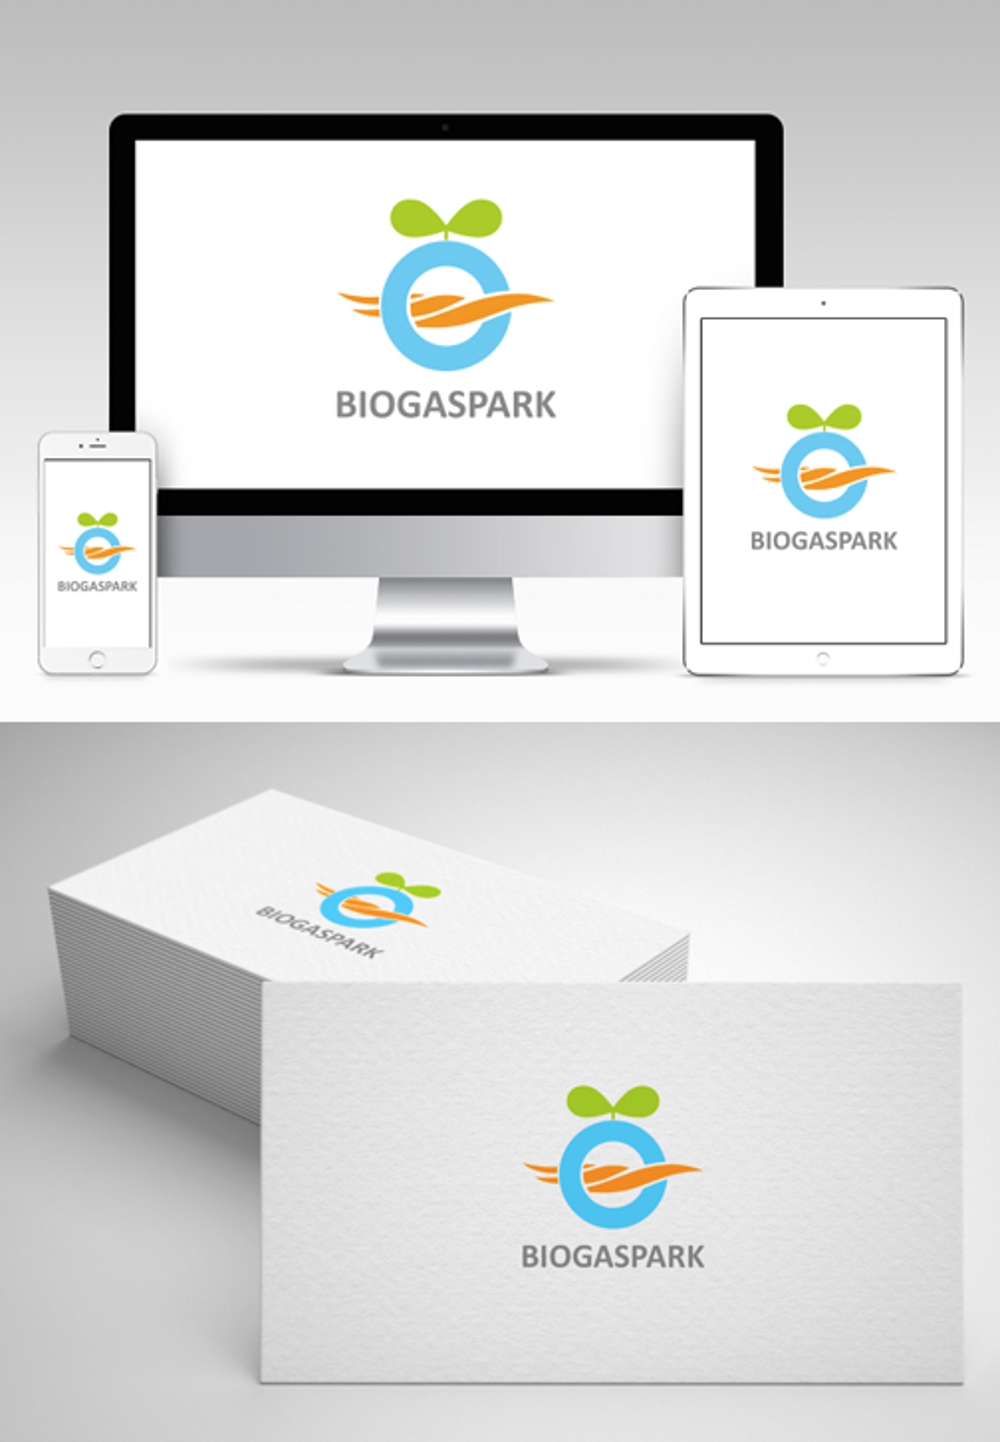 世界最高効率バイオガスプラントによる事業ブランド「BioGasPark」のロゴ